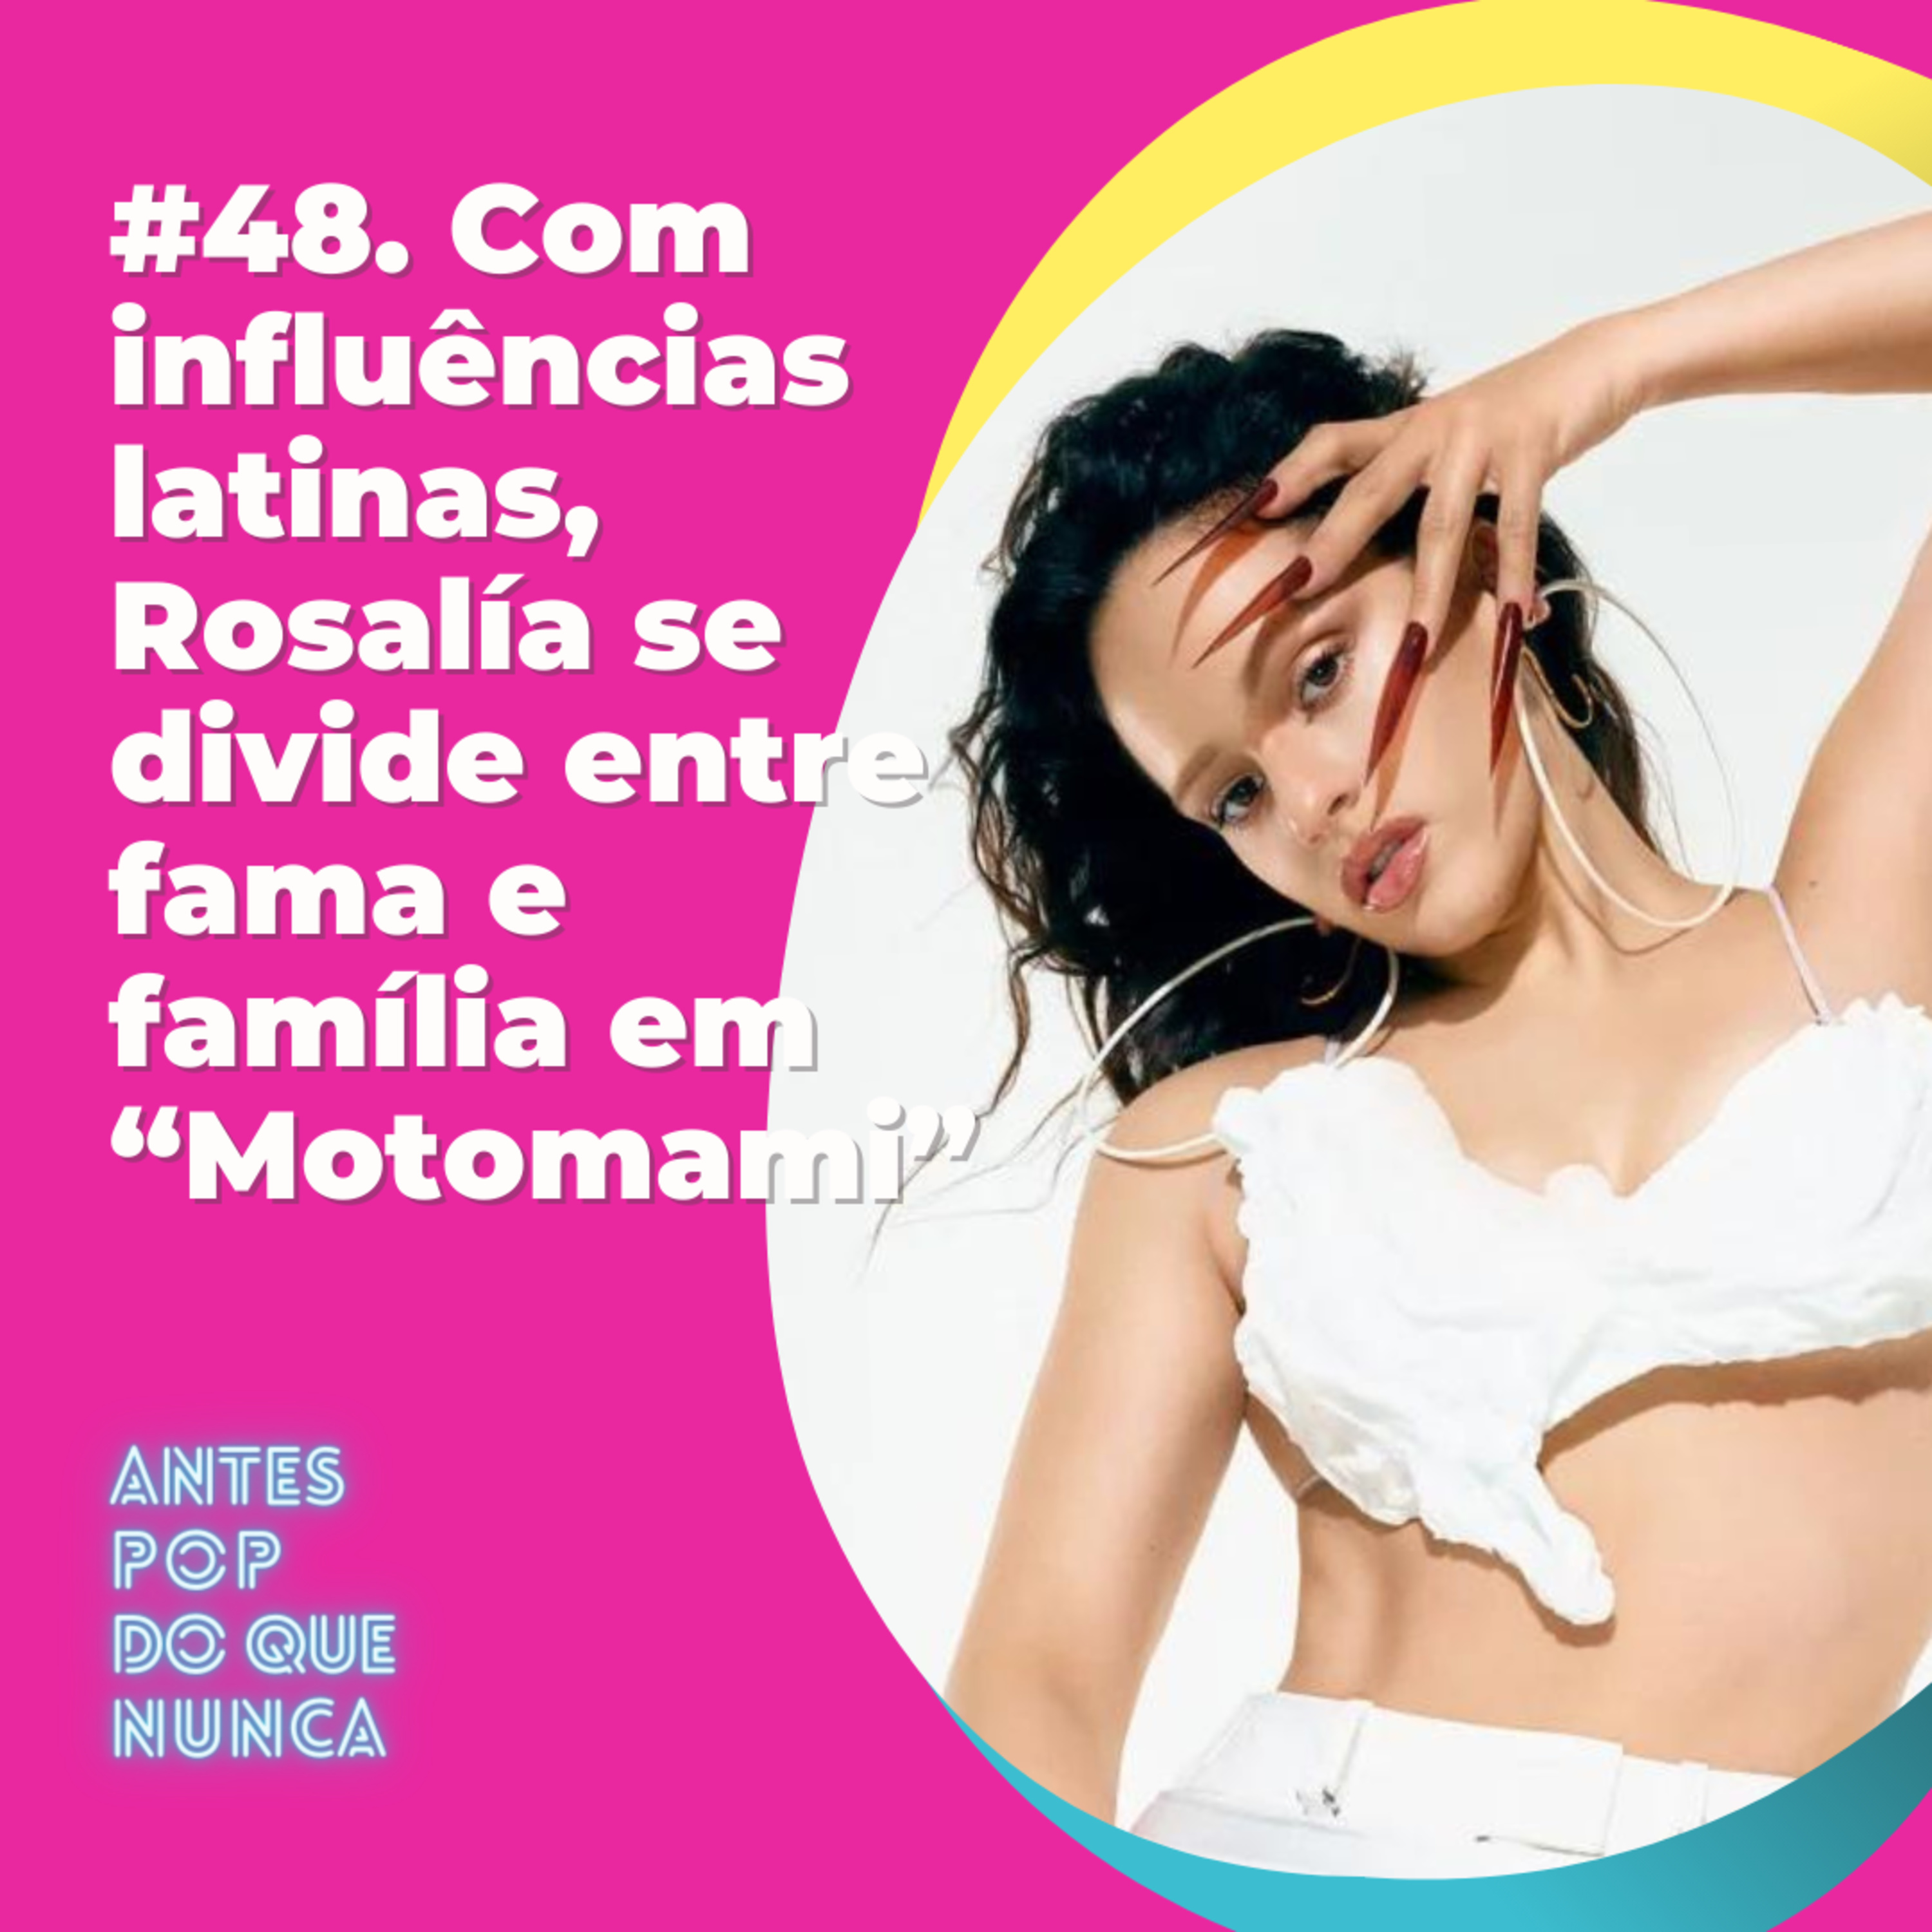 #48. Com influências latinas, Rosalía se divide entre fama e família em “Motomami”